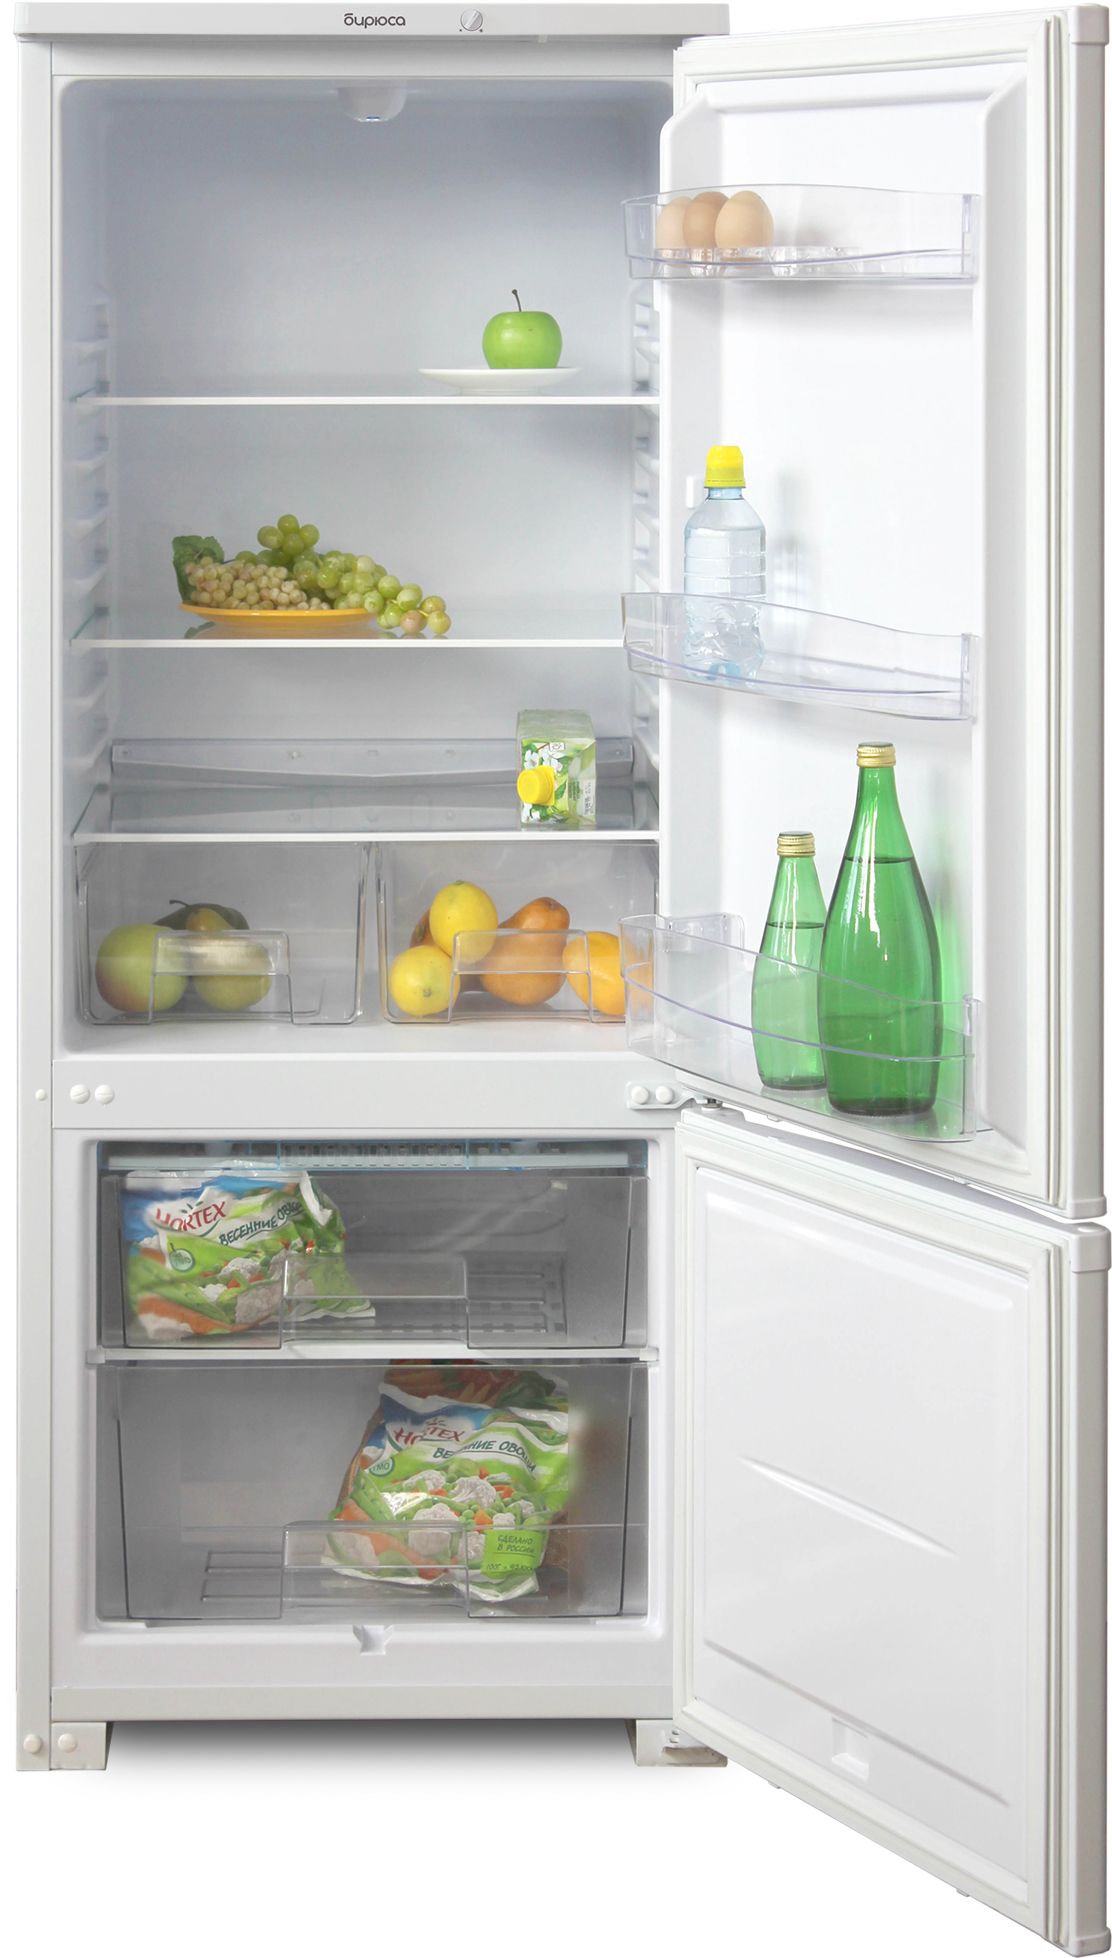 холодильник бирюса 151, купить в Красноярске холодильник бирюса 151,  купить в Красноярске дешево холодильник бирюса 151, купить в Красноярске минимальной цене холодильник бирюса 151